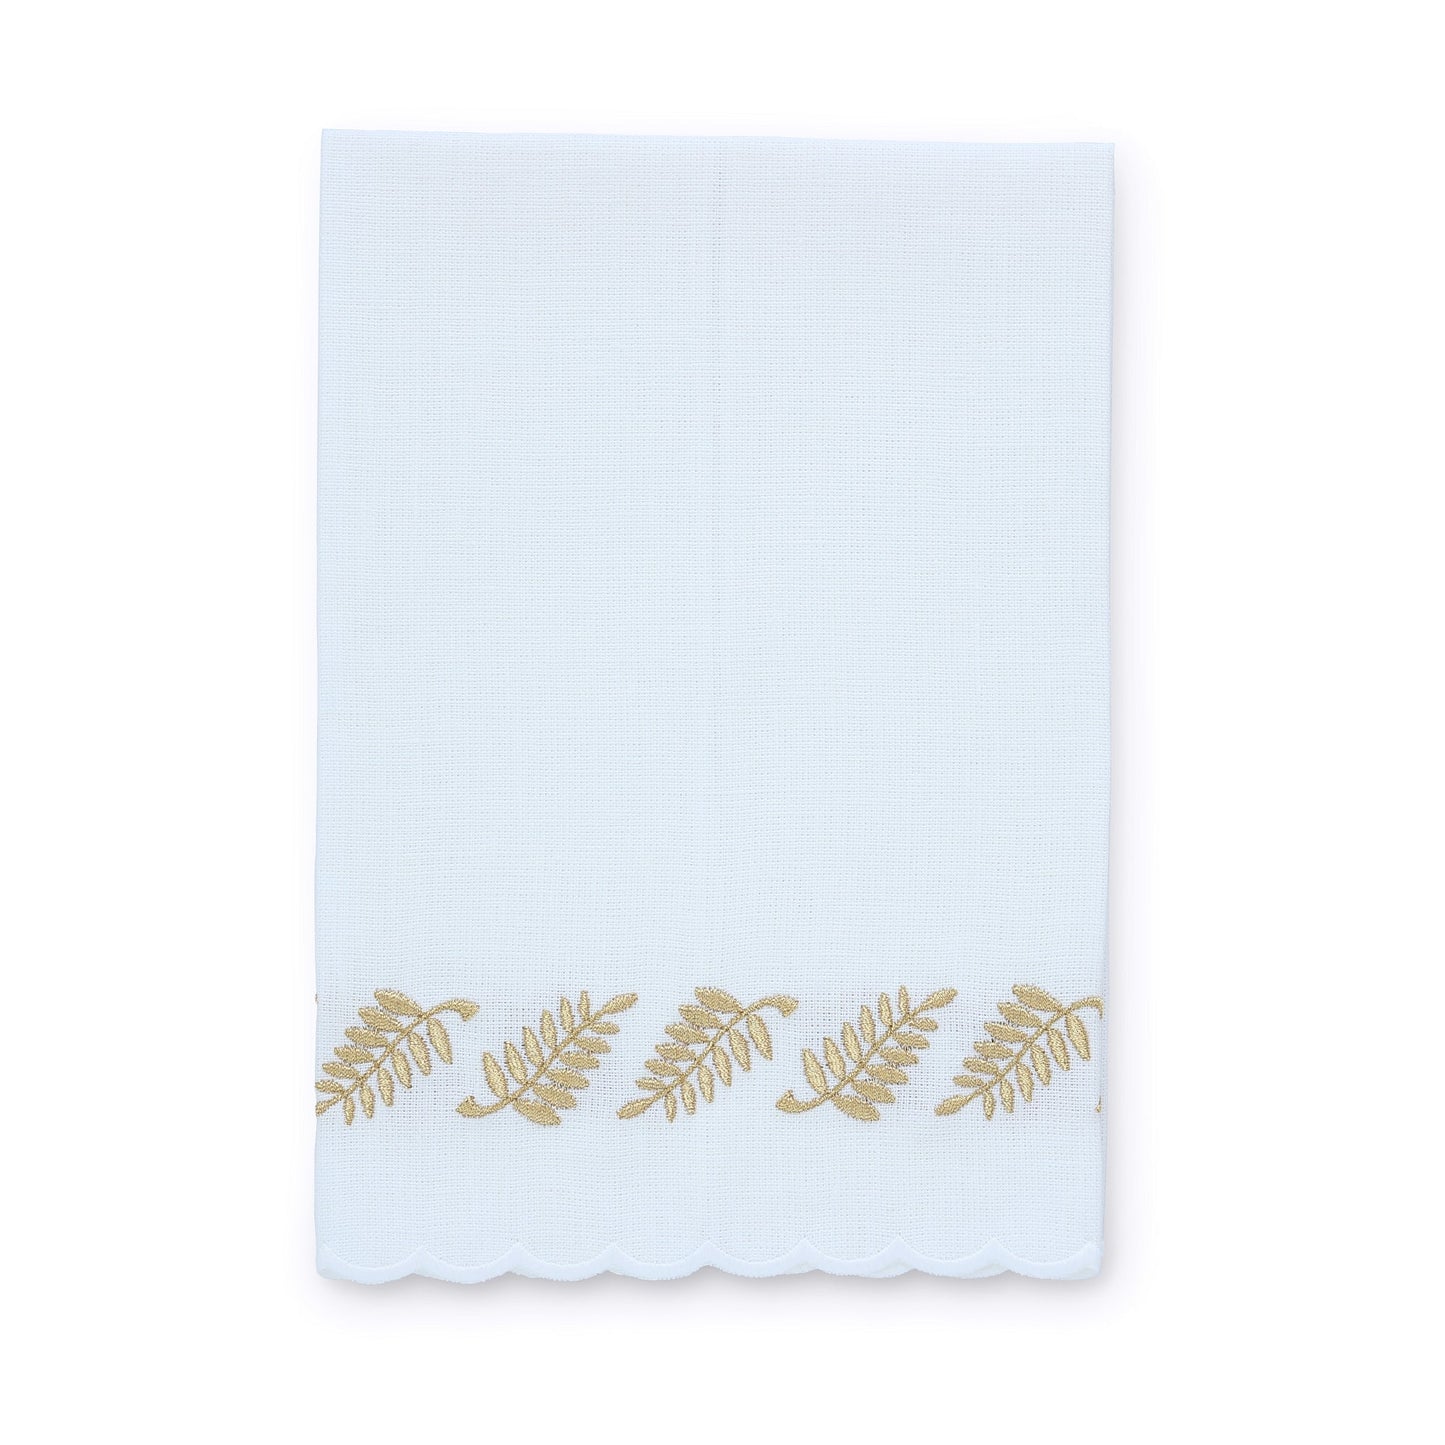 Asciugamano ospite in lino smerlato felce bianco/oro (ciascuno)